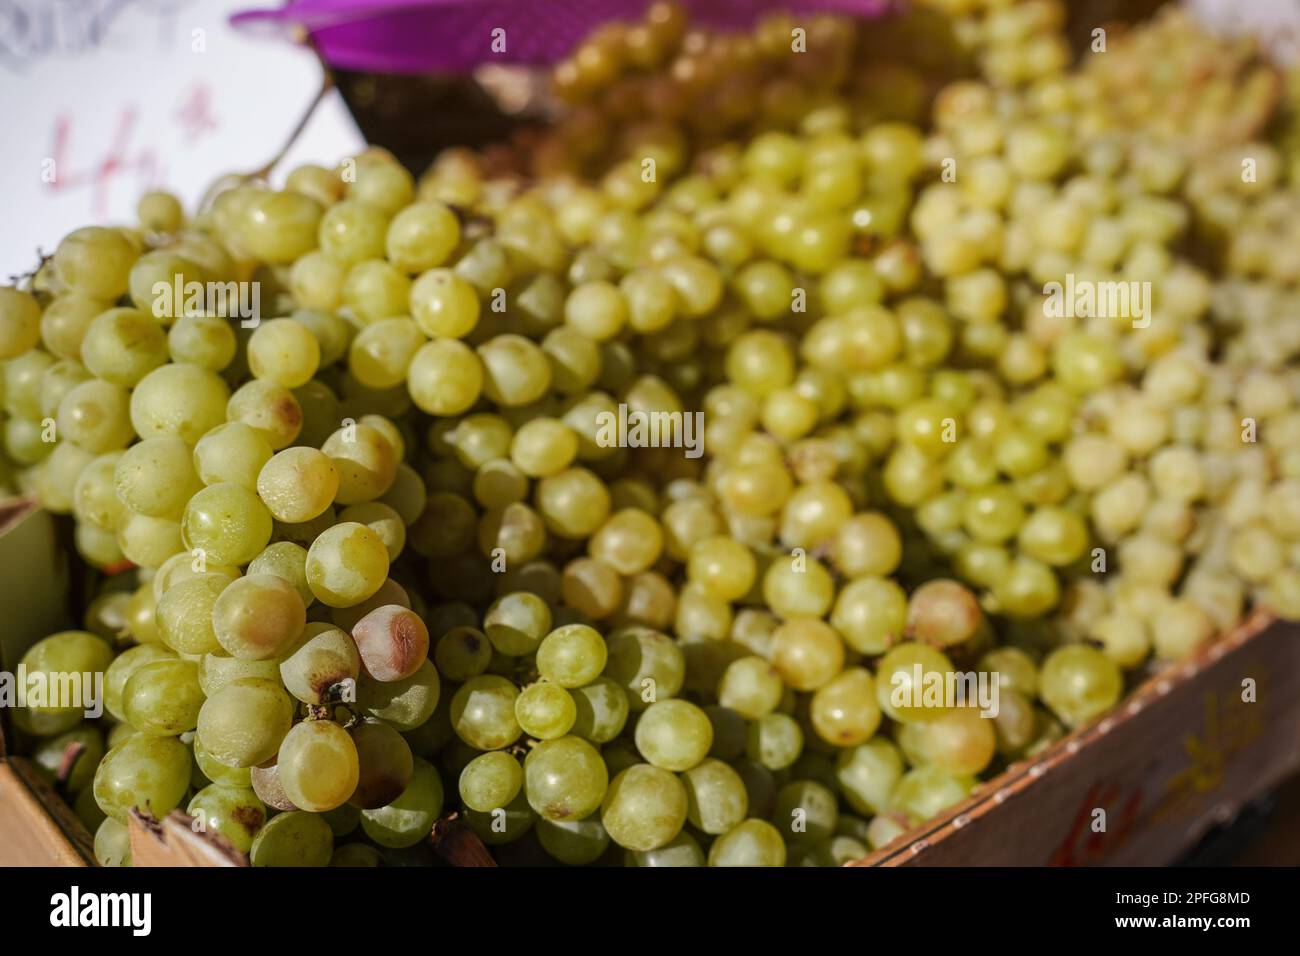 Le soleil brille sur un tas de raisins verts ou blancs exposés sur le marché de la rue Banque D'Images